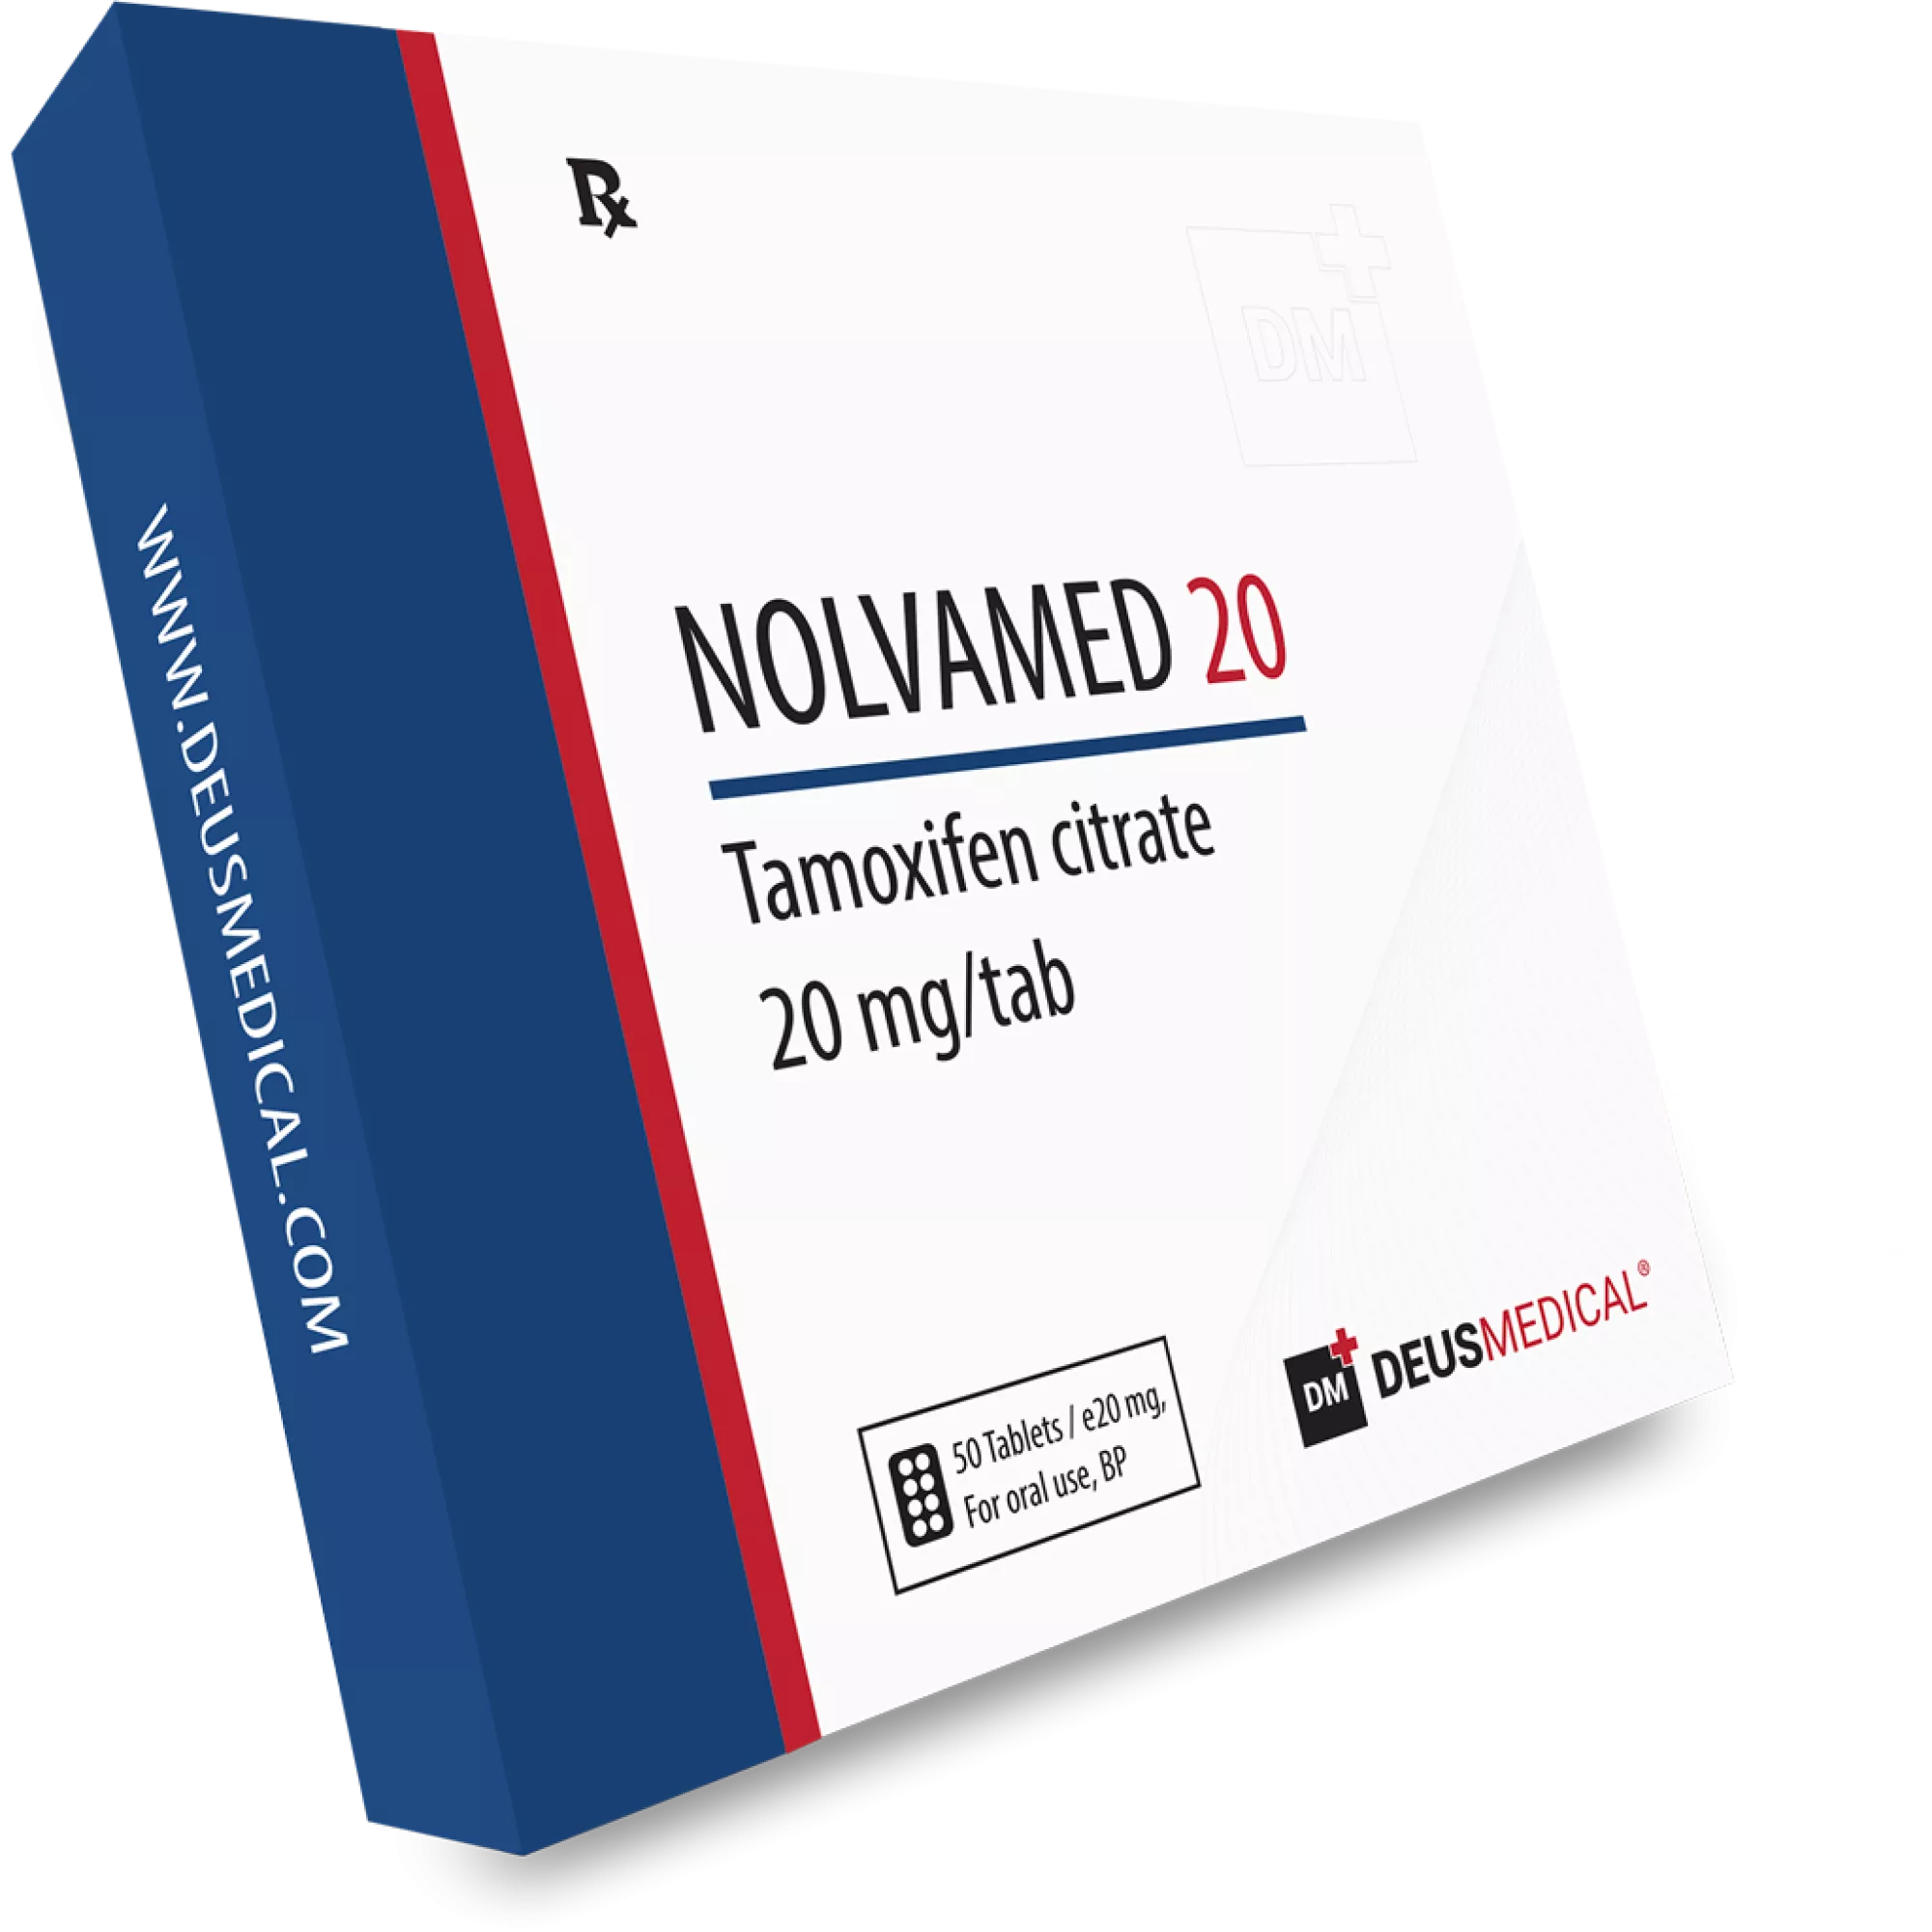 NOLVAMED 20 (Tamoxifen Citrate), Deus Medical, Köp steroider online - www.deuspower.shop